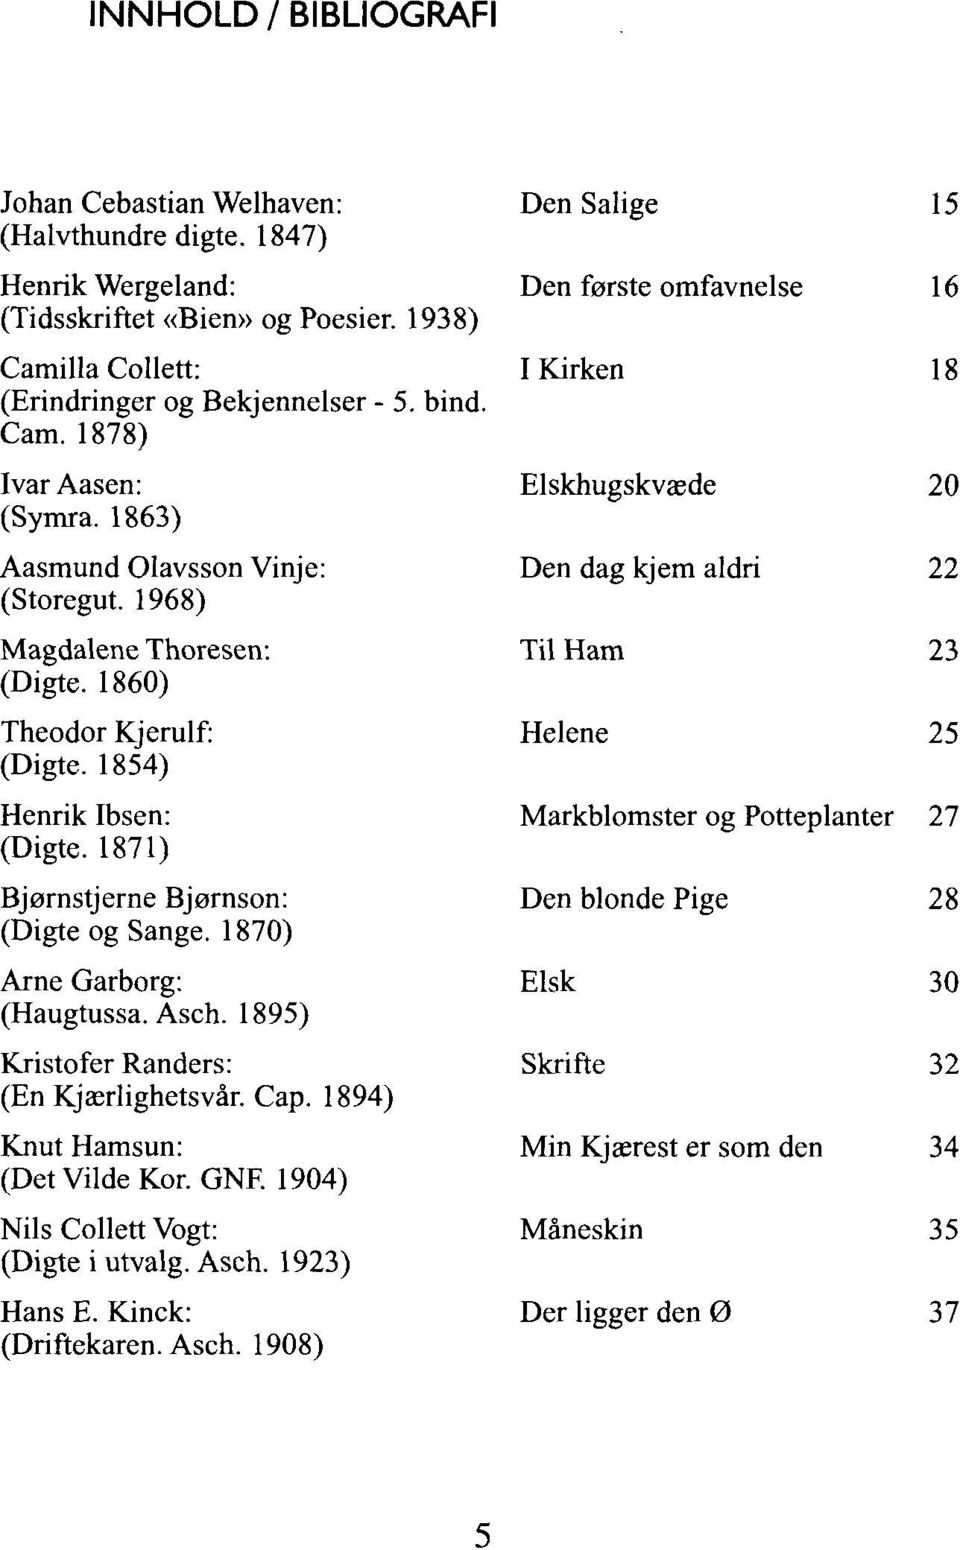 1870) Arne Garborg: (Haugtussa. Asch. 1895) Kristofer Randers: (En Kjærlighetsvår. Cap. 1894) Knut Hamsun: (Det Vilde Kor. GNR 1904) Nils Collett Vogt: (Digte i utvalg. Asch. 1923) Hans E.